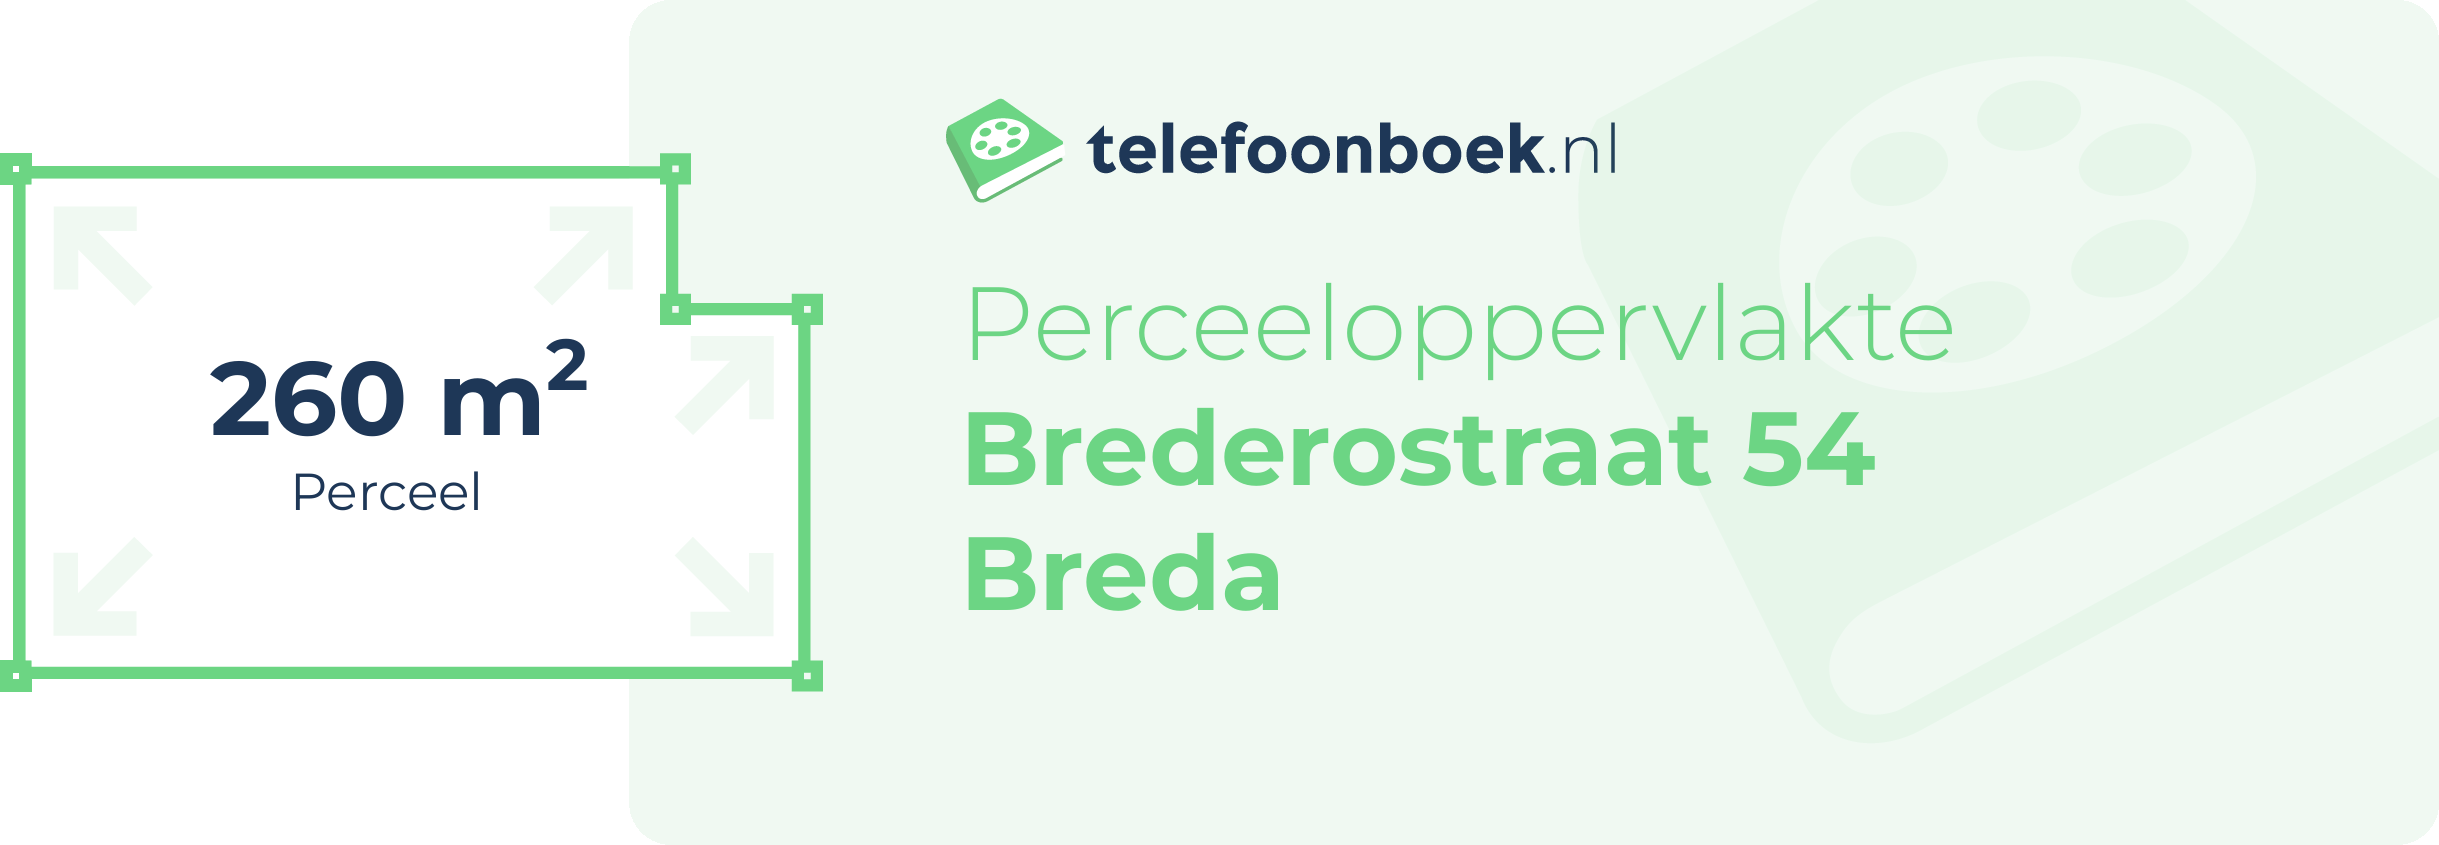 Perceeloppervlakte Brederostraat 54 Breda